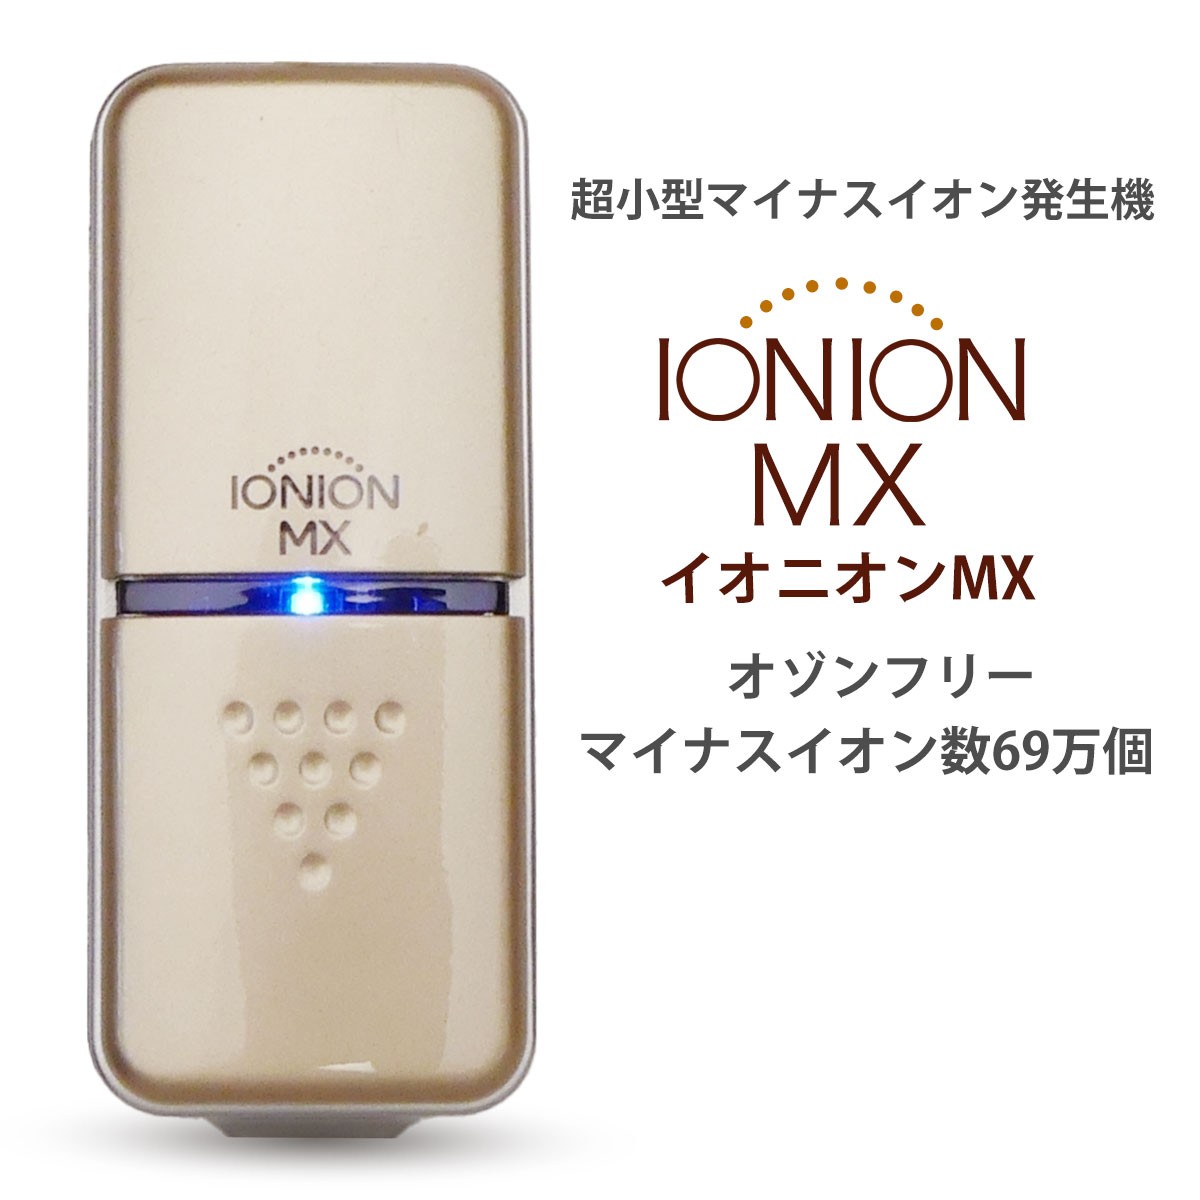 IONION MX イオニオンMX 超小型 マイナスイオン発生器 オゾンフリー 